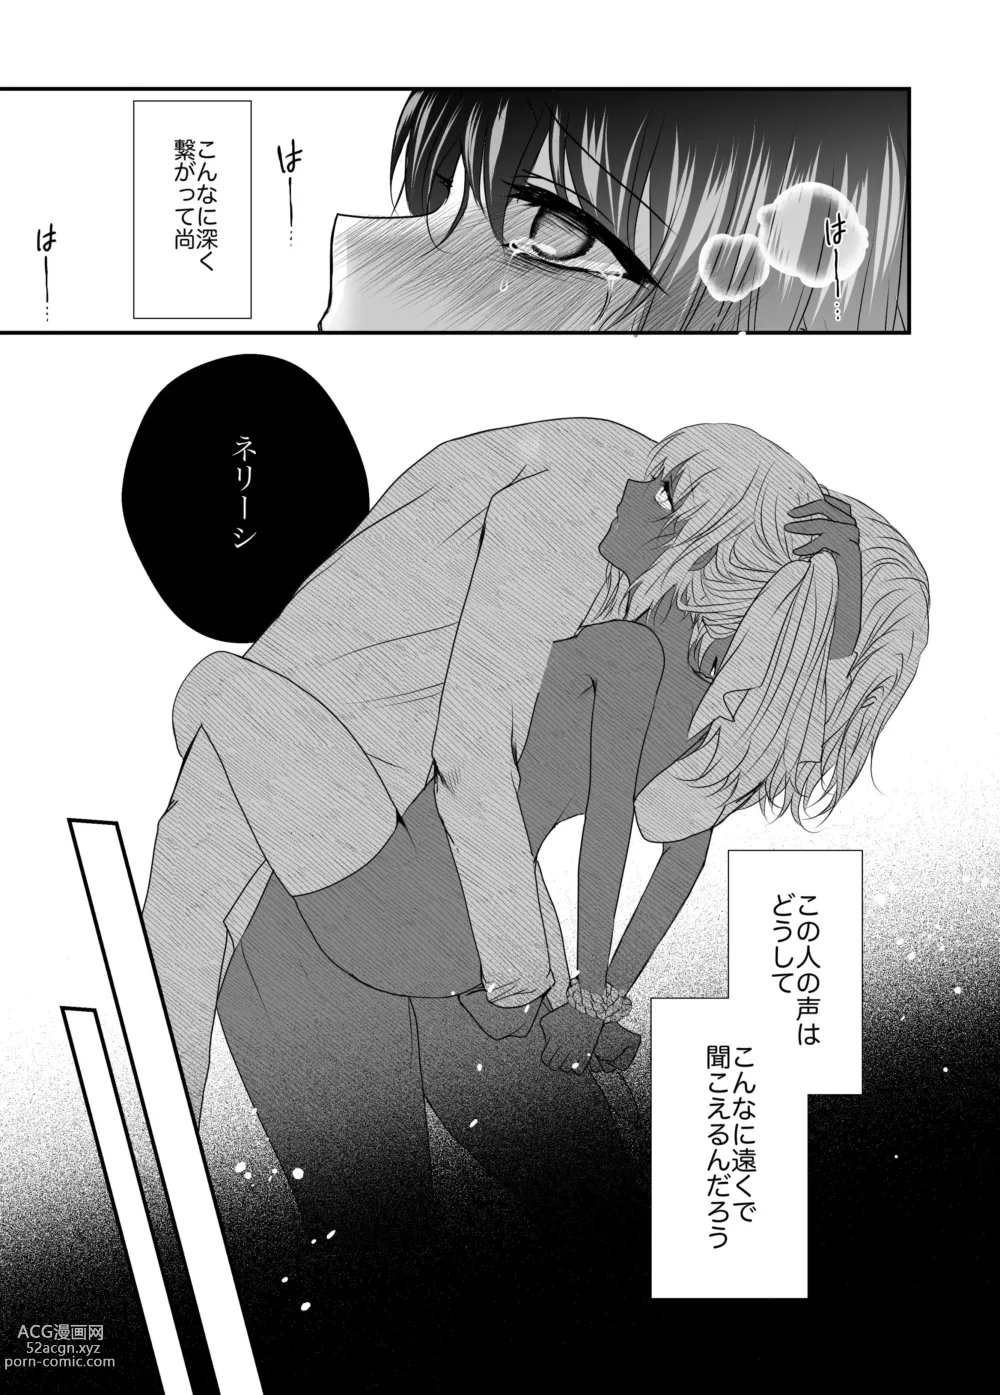 Page 16 of doujinshi Kuragari Dake ga Shitte iru